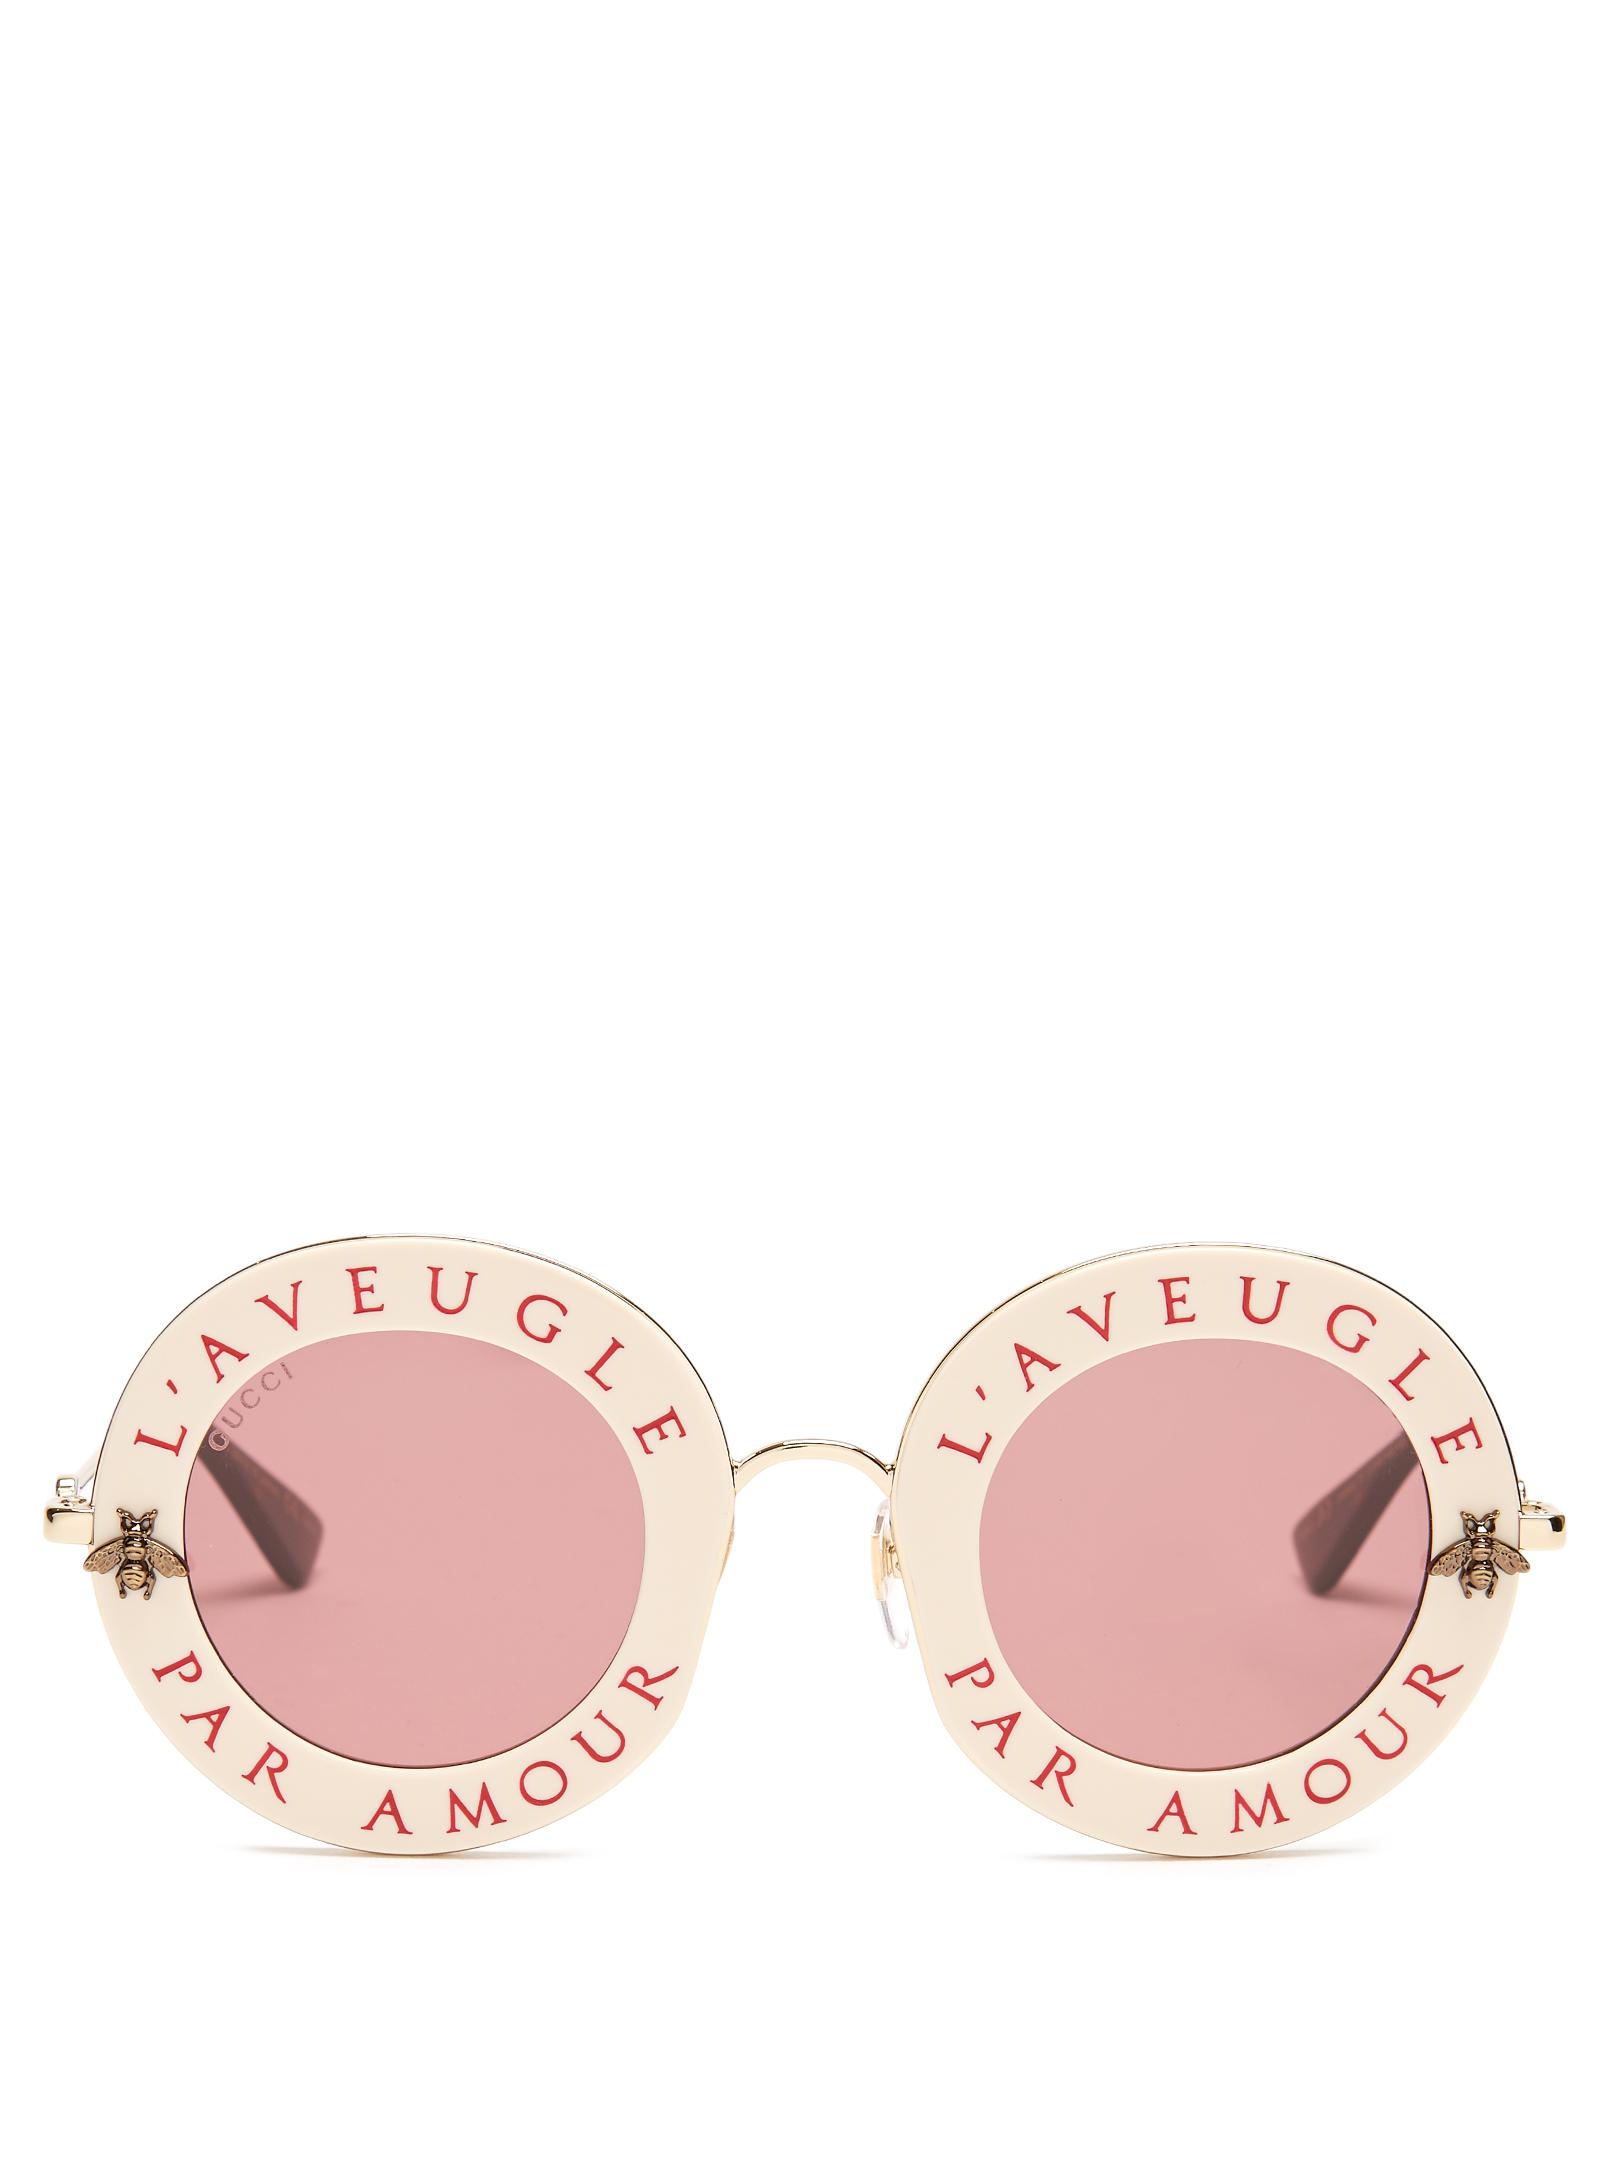 Lunette Gucci Amour Par Aveugle Sales Discounts, 44% OFF |  landivarinspira.edu.gt